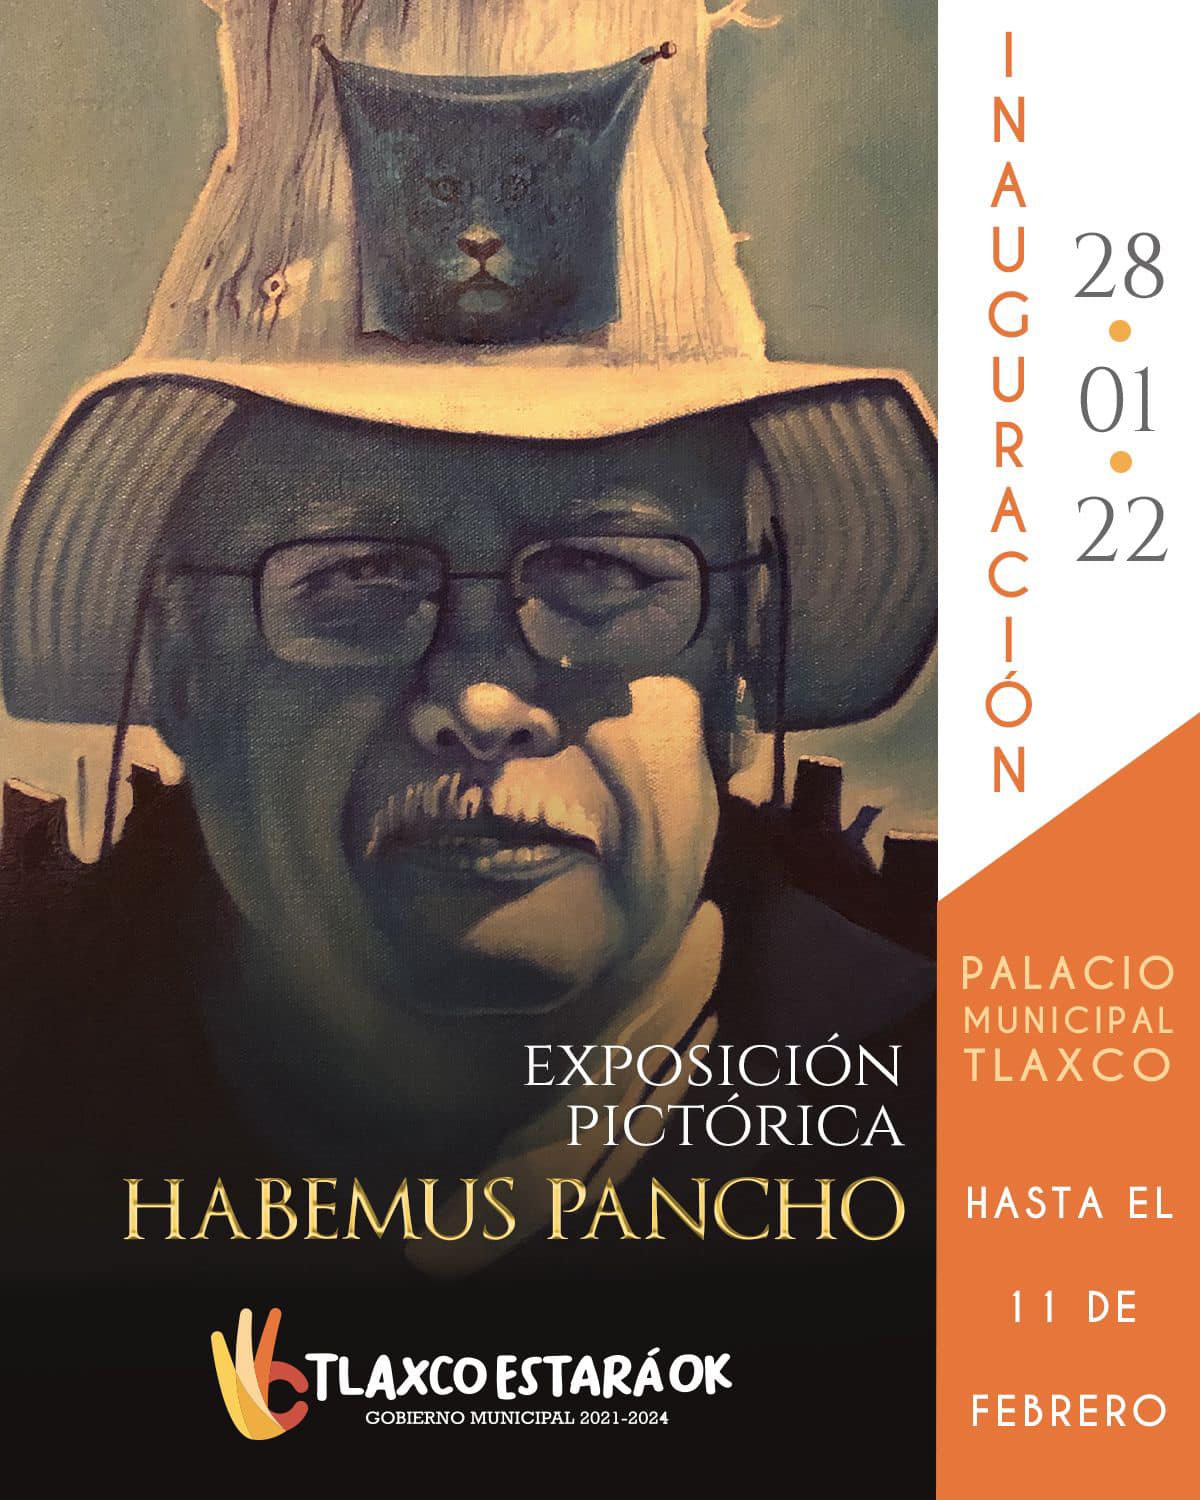 Ayuntamiento de Tlaxco te invita a la Exposición Pictórica “Habemus Pancho”